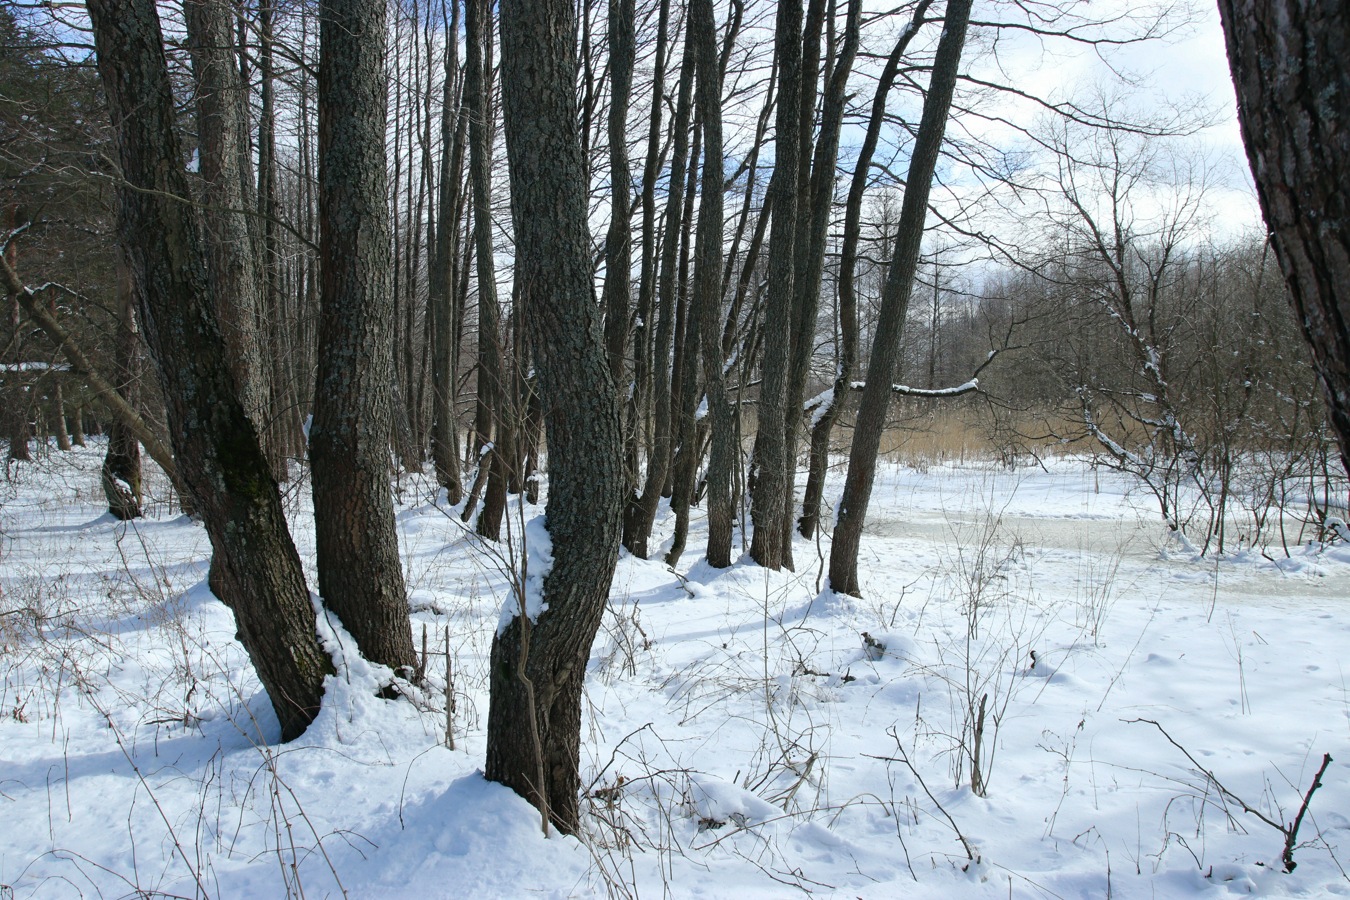 Большая Ижора, image of landscape/habitat.